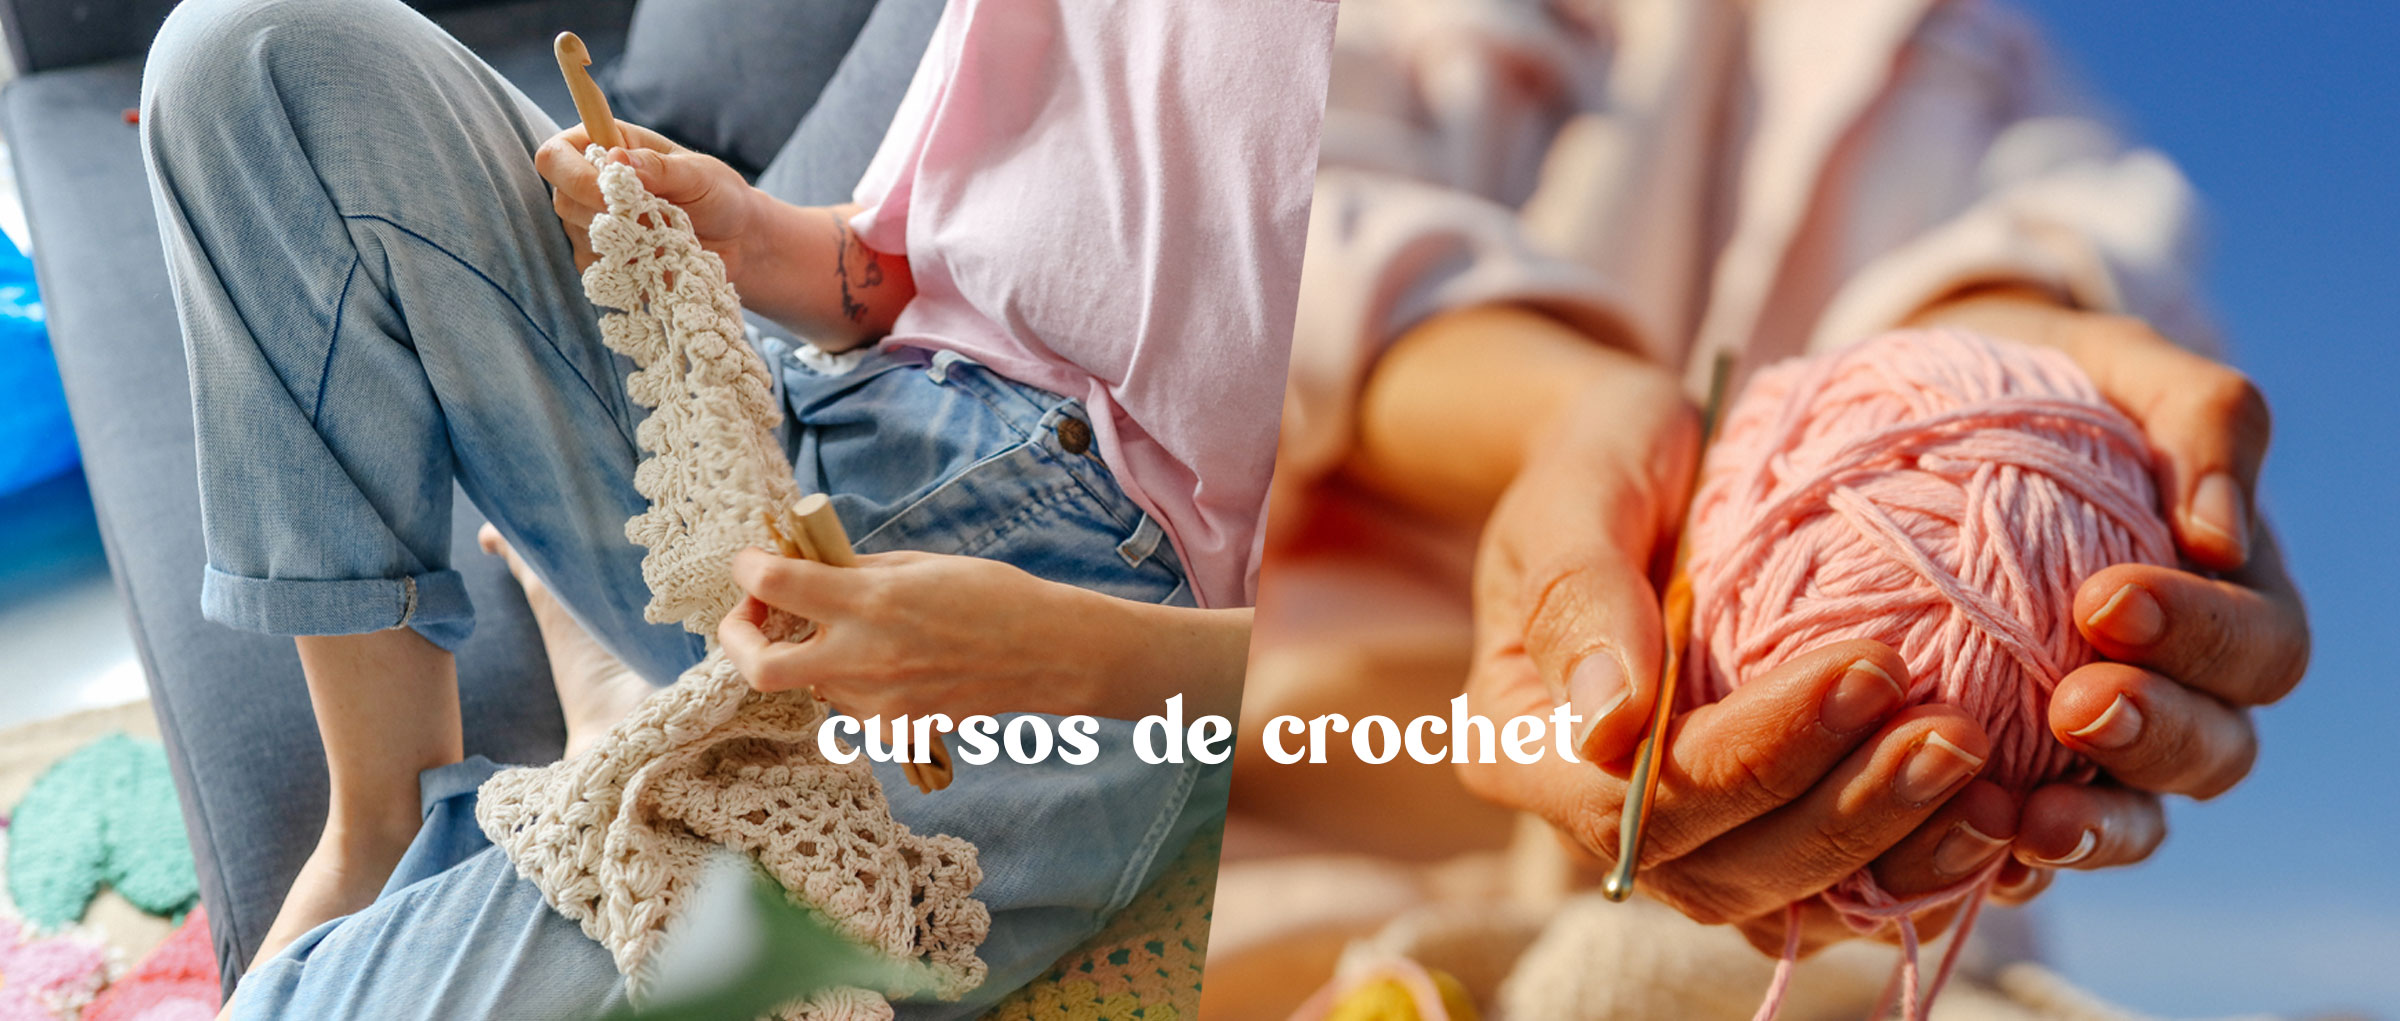 Mila-Aparicio-Cursos-de-Crochet-S4-